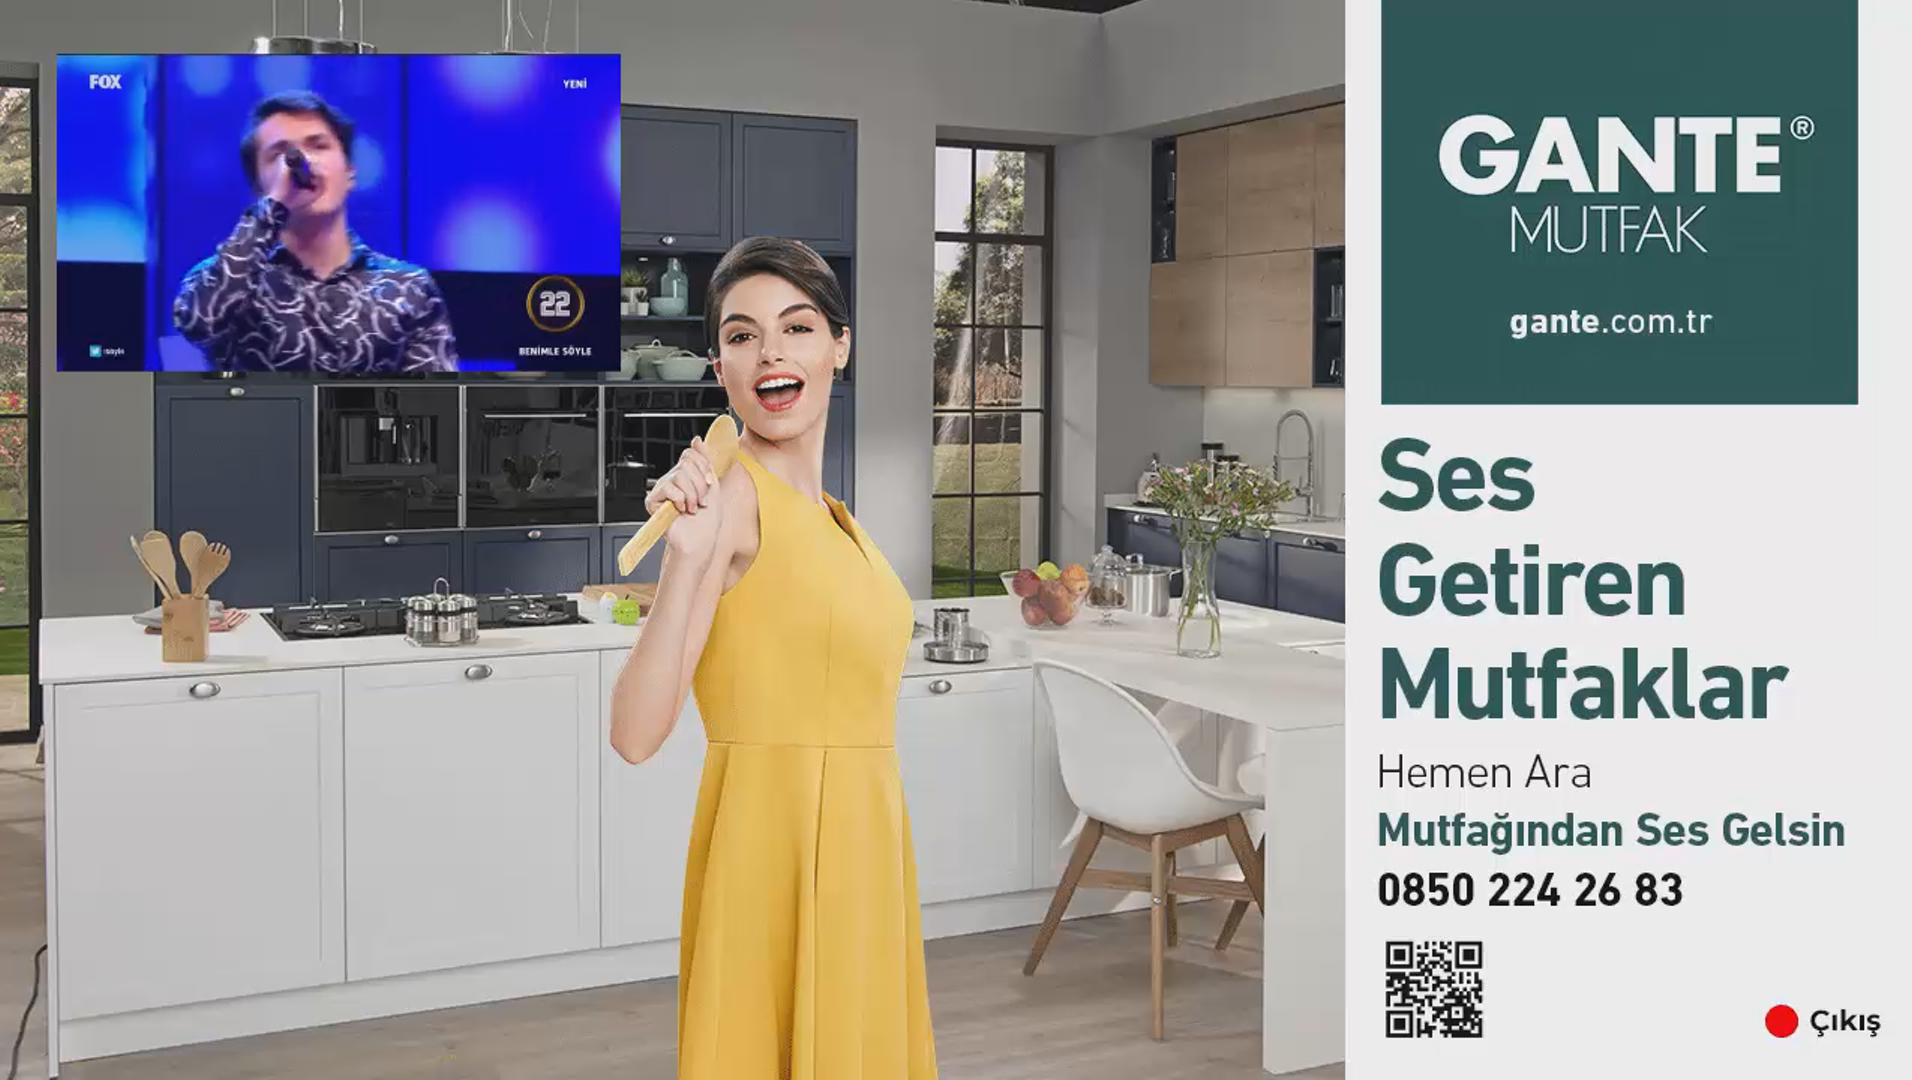 Gante Mutfak Etkileşimli Fox TV Reklamı